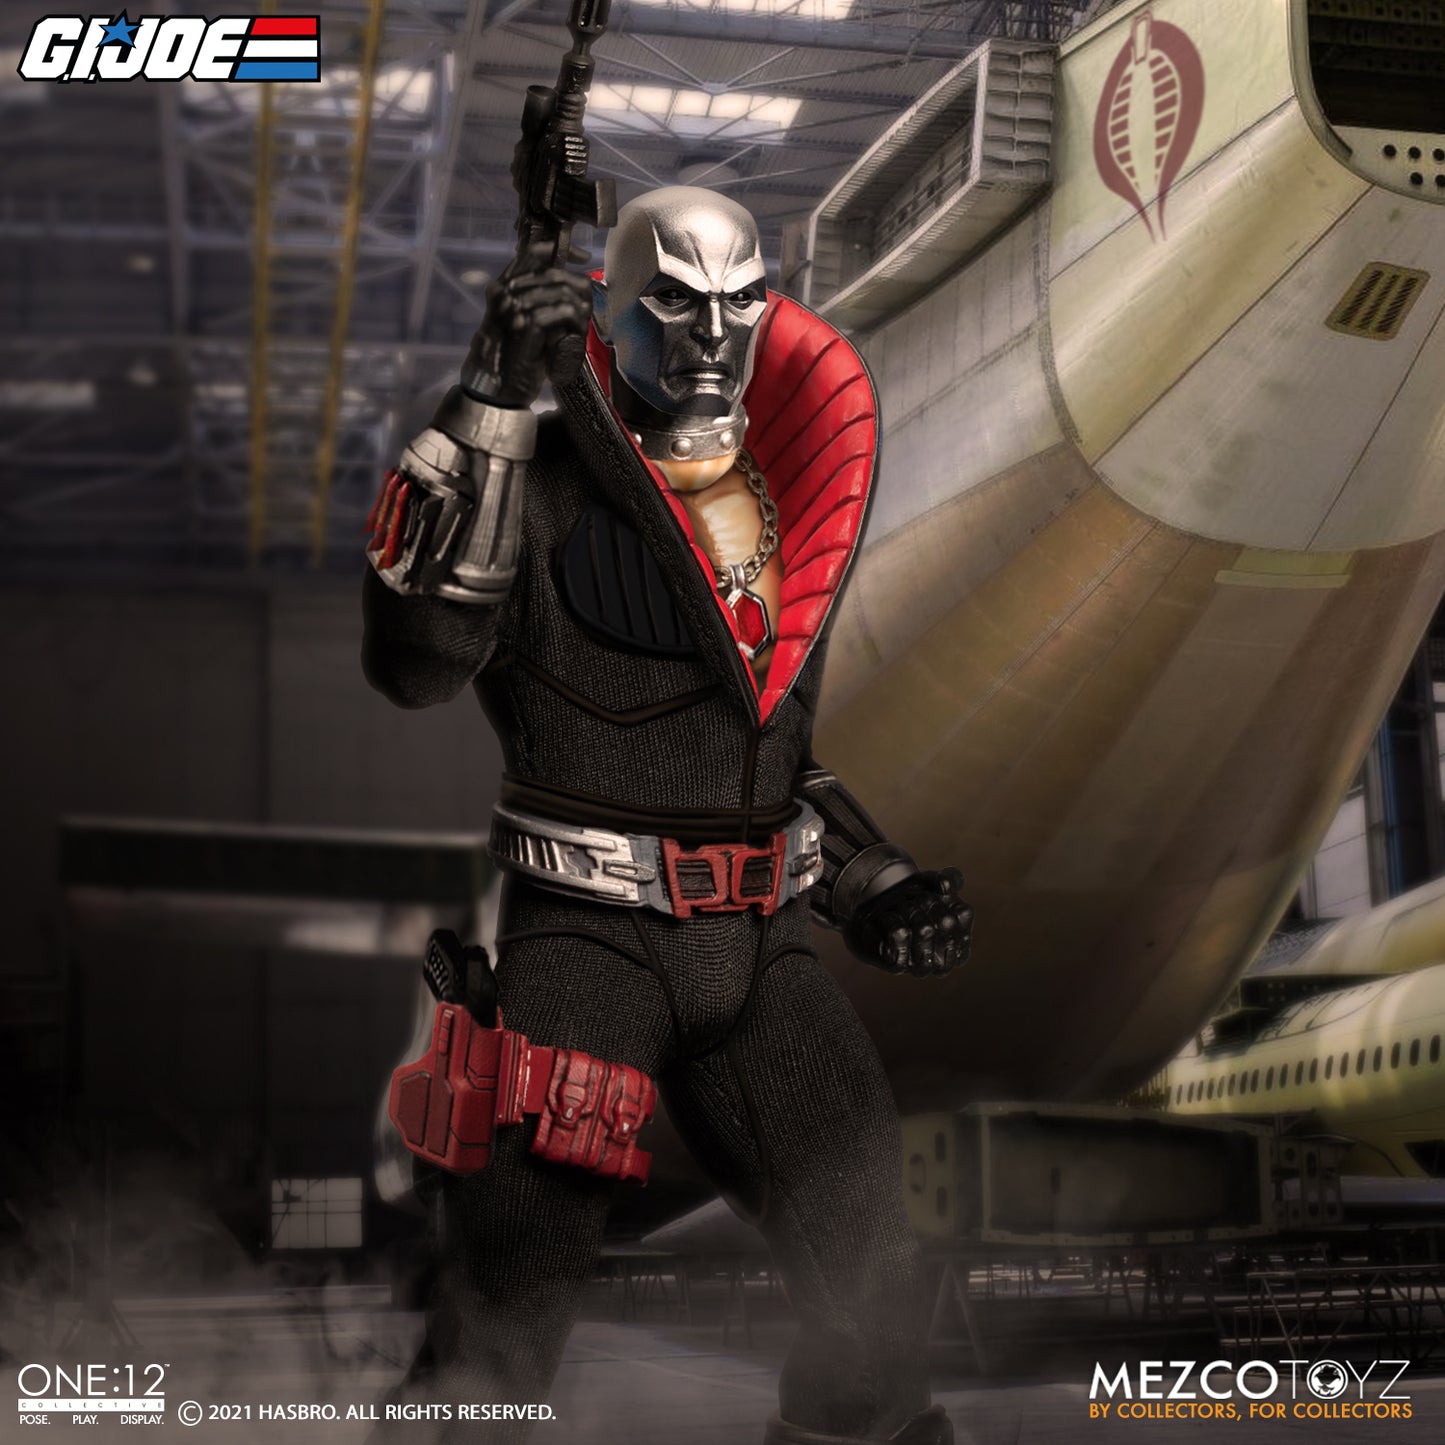 Mezco - ONE:12 COLLECTIVE G.I. Joe: Destro